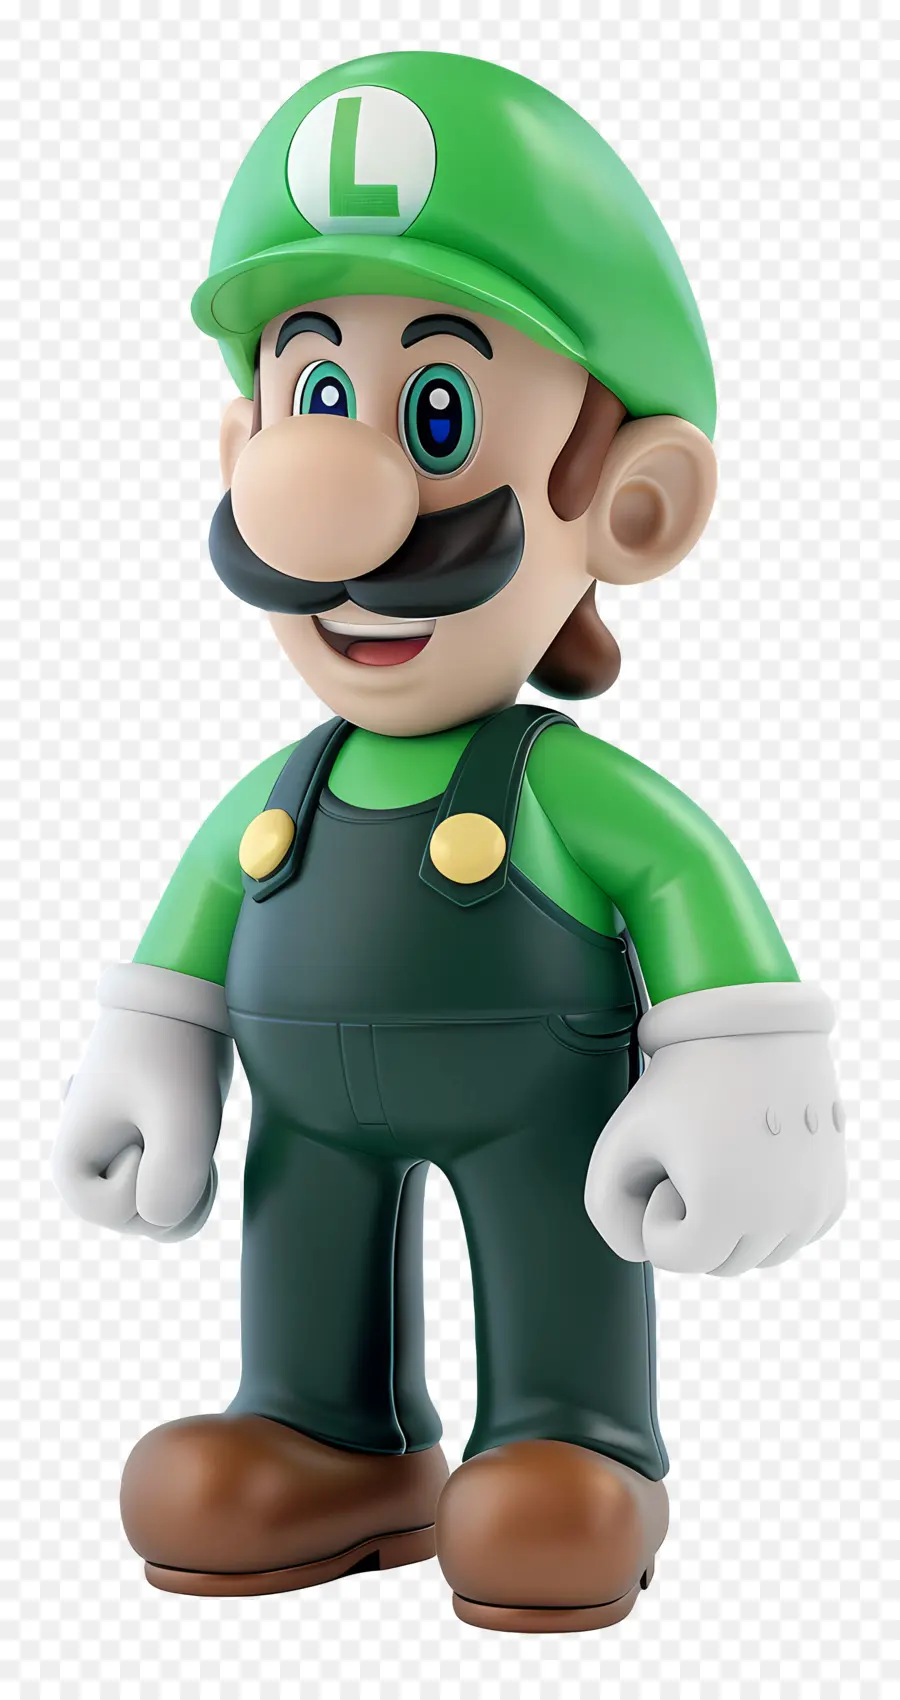 mario - Mario mặc áo liền quần màu xanh lá cây và mũ đỏ, mỉm cười